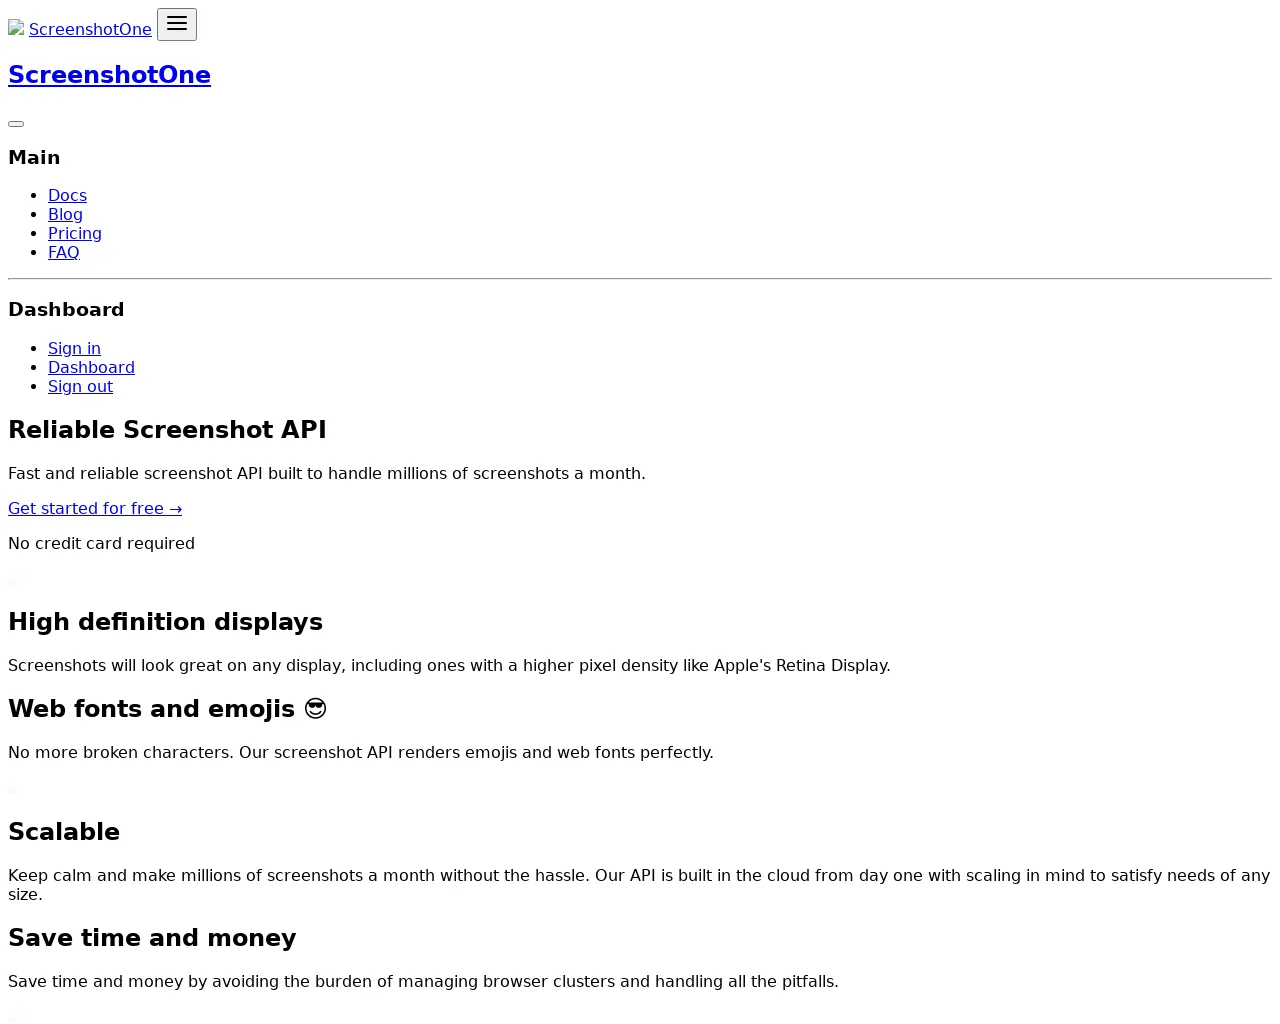 A screenshot of the ScreenshotOne landing page site taken by screenshot
API